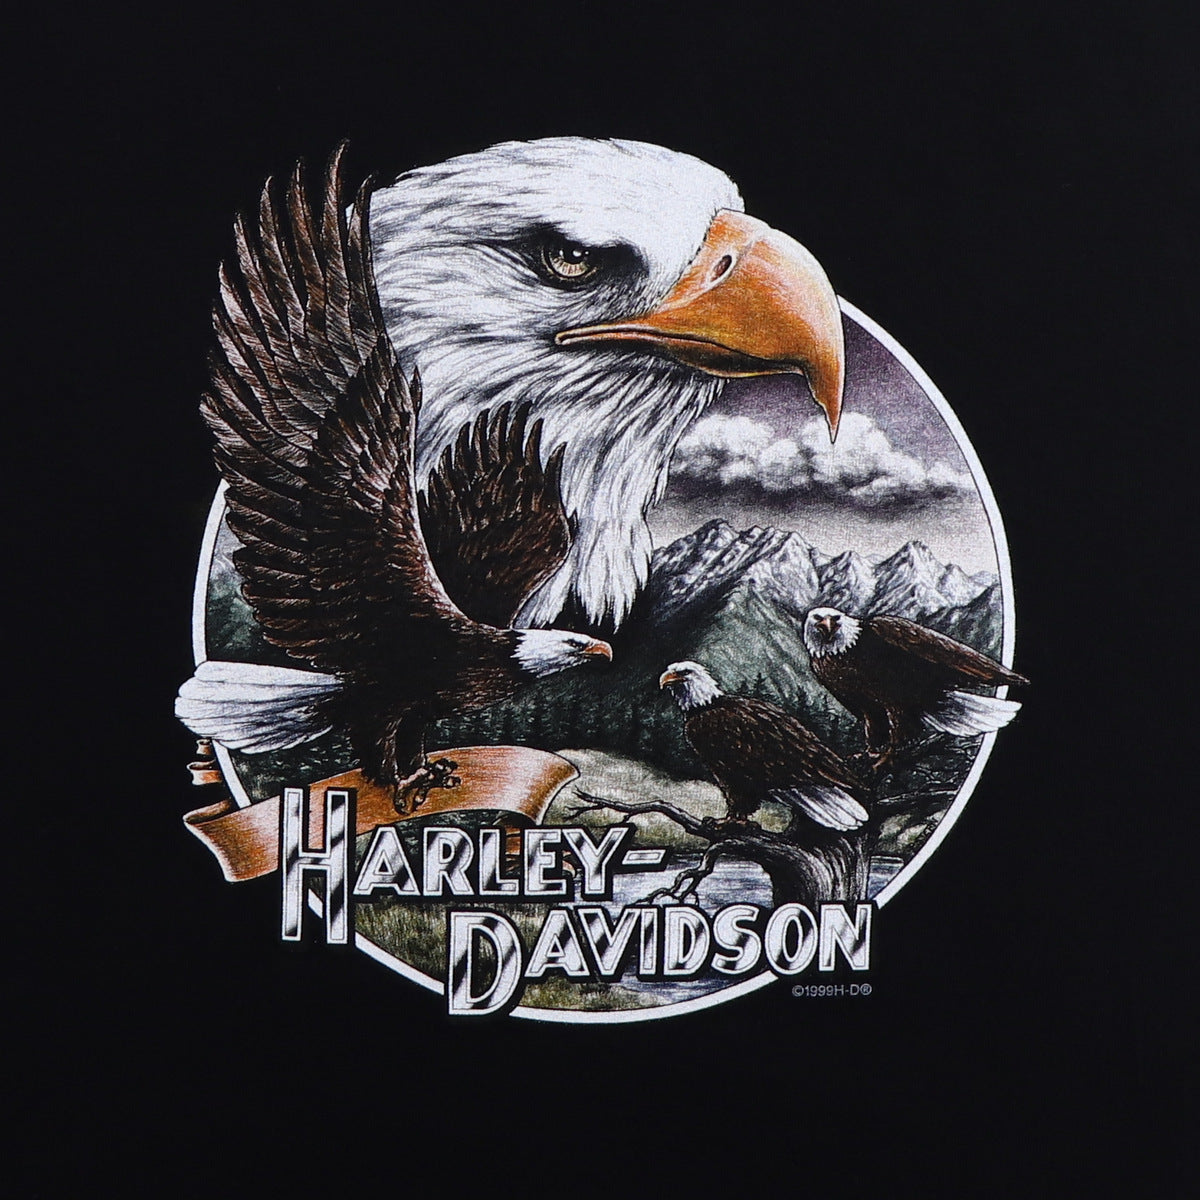 1999 Harley Davidson Las Vegas Nevada Shirt